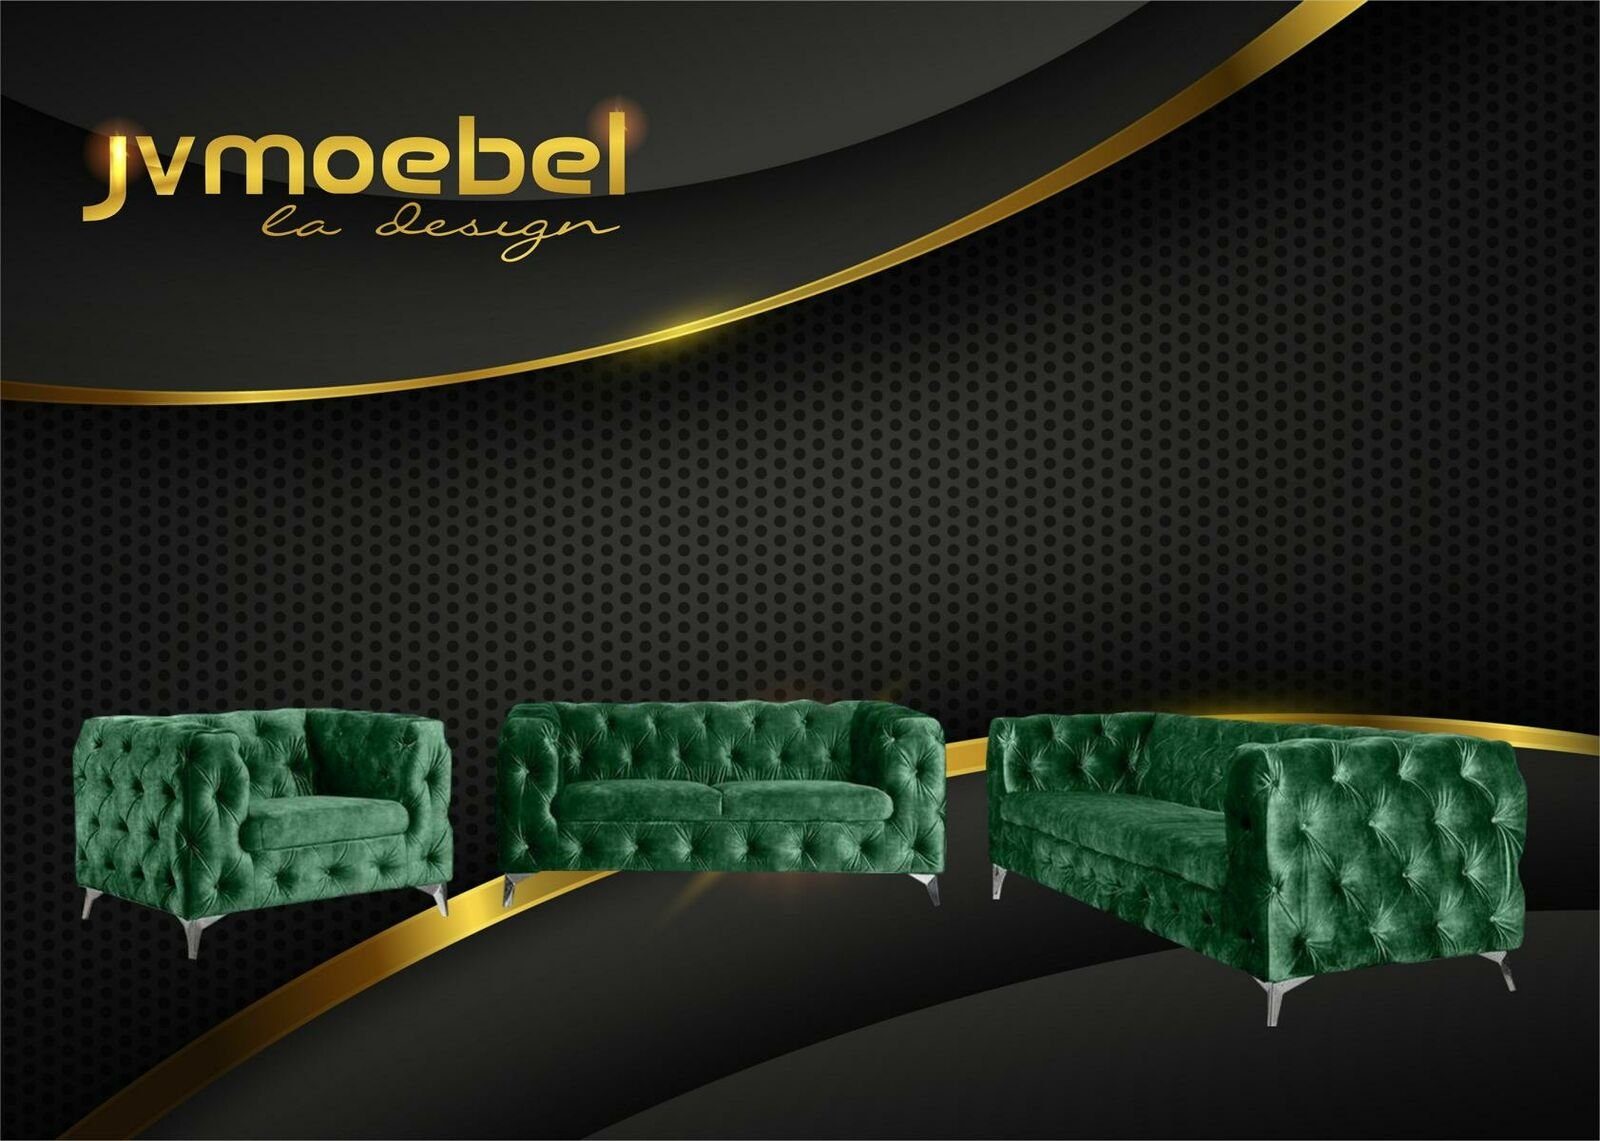 JVmoebel Chesterfield-Sofa, Sofagarnitur 321 Sitzer Textil Couch Chesterfield Wohnlandschaft Garnitur Design Grün